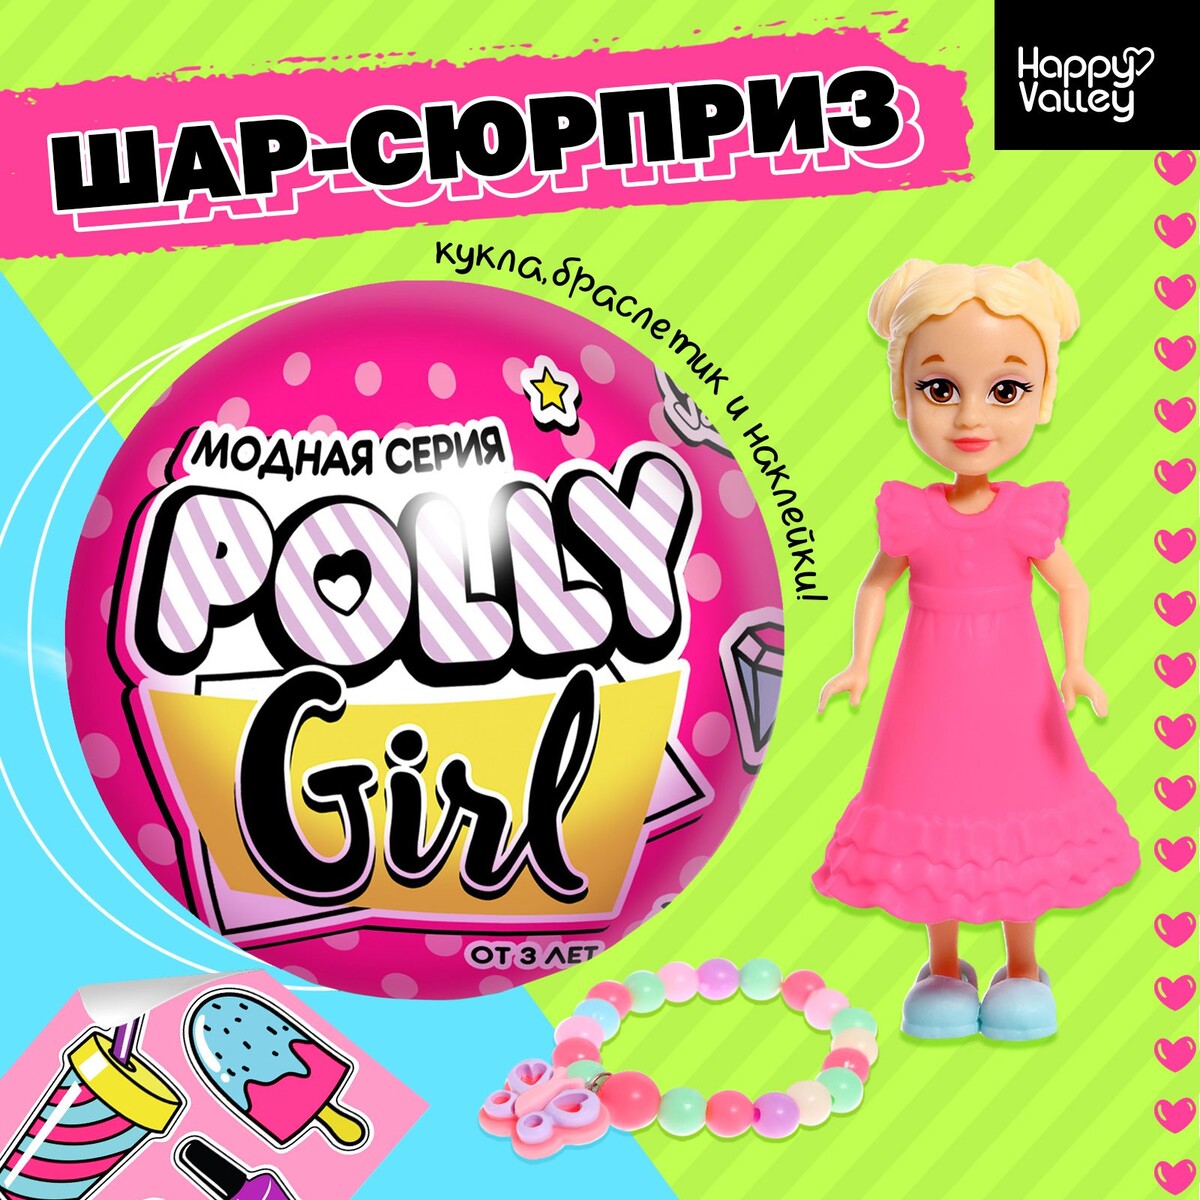 Кукла-сюрприз polly girl в шаре, с браслетом кукла simba еви в 3 образах русалочка принцесса фея